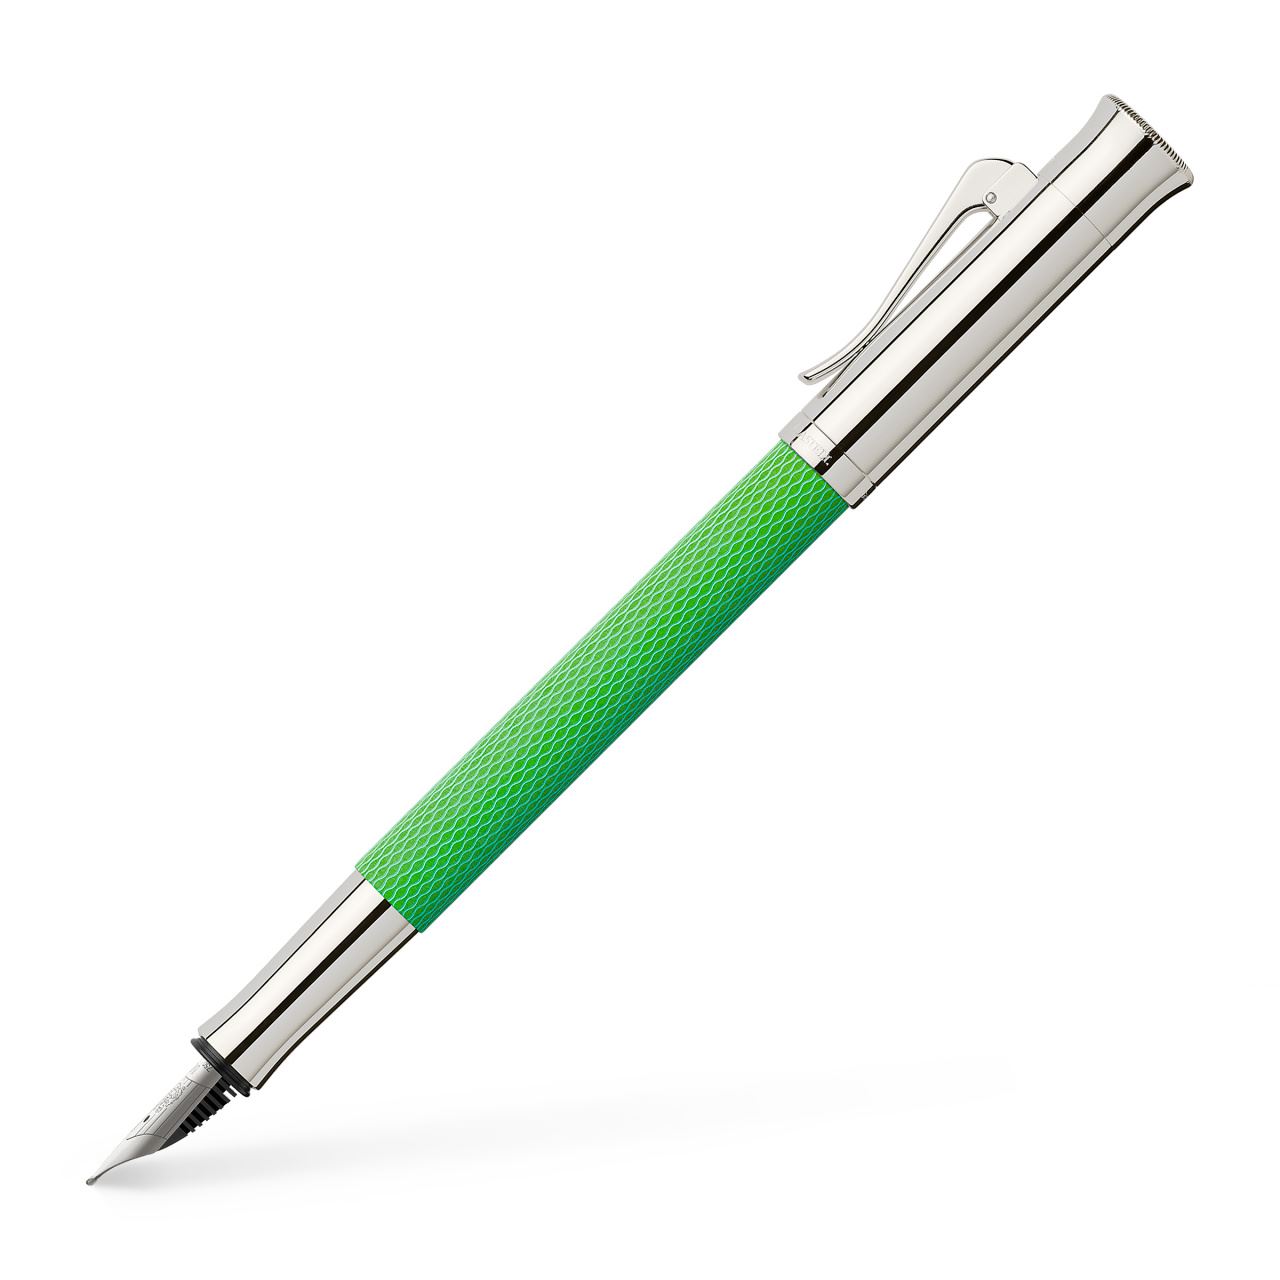 Graf-von-Faber-Castell - Fountain pen Guilloche Viper Green F